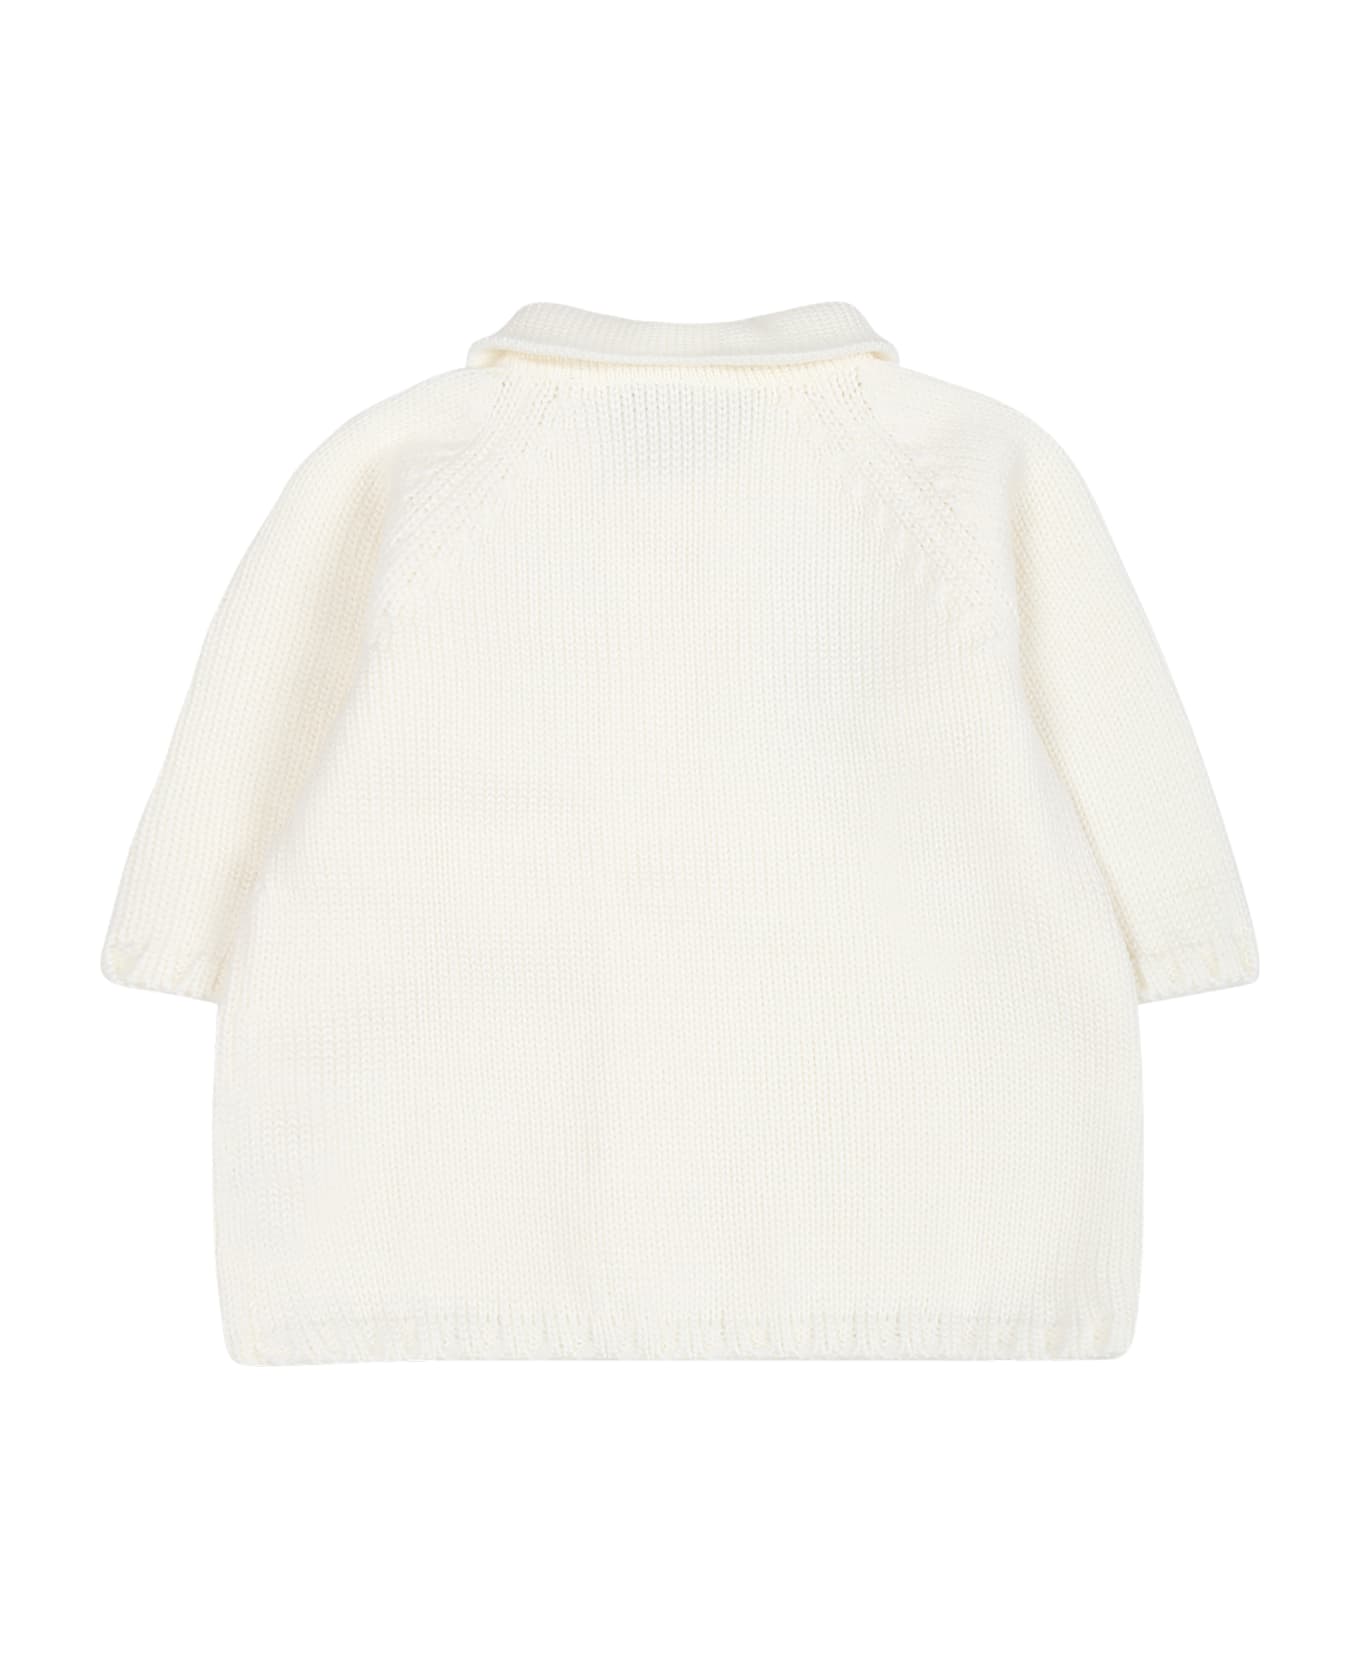 Little Bear White Coat For Baby Kids - White